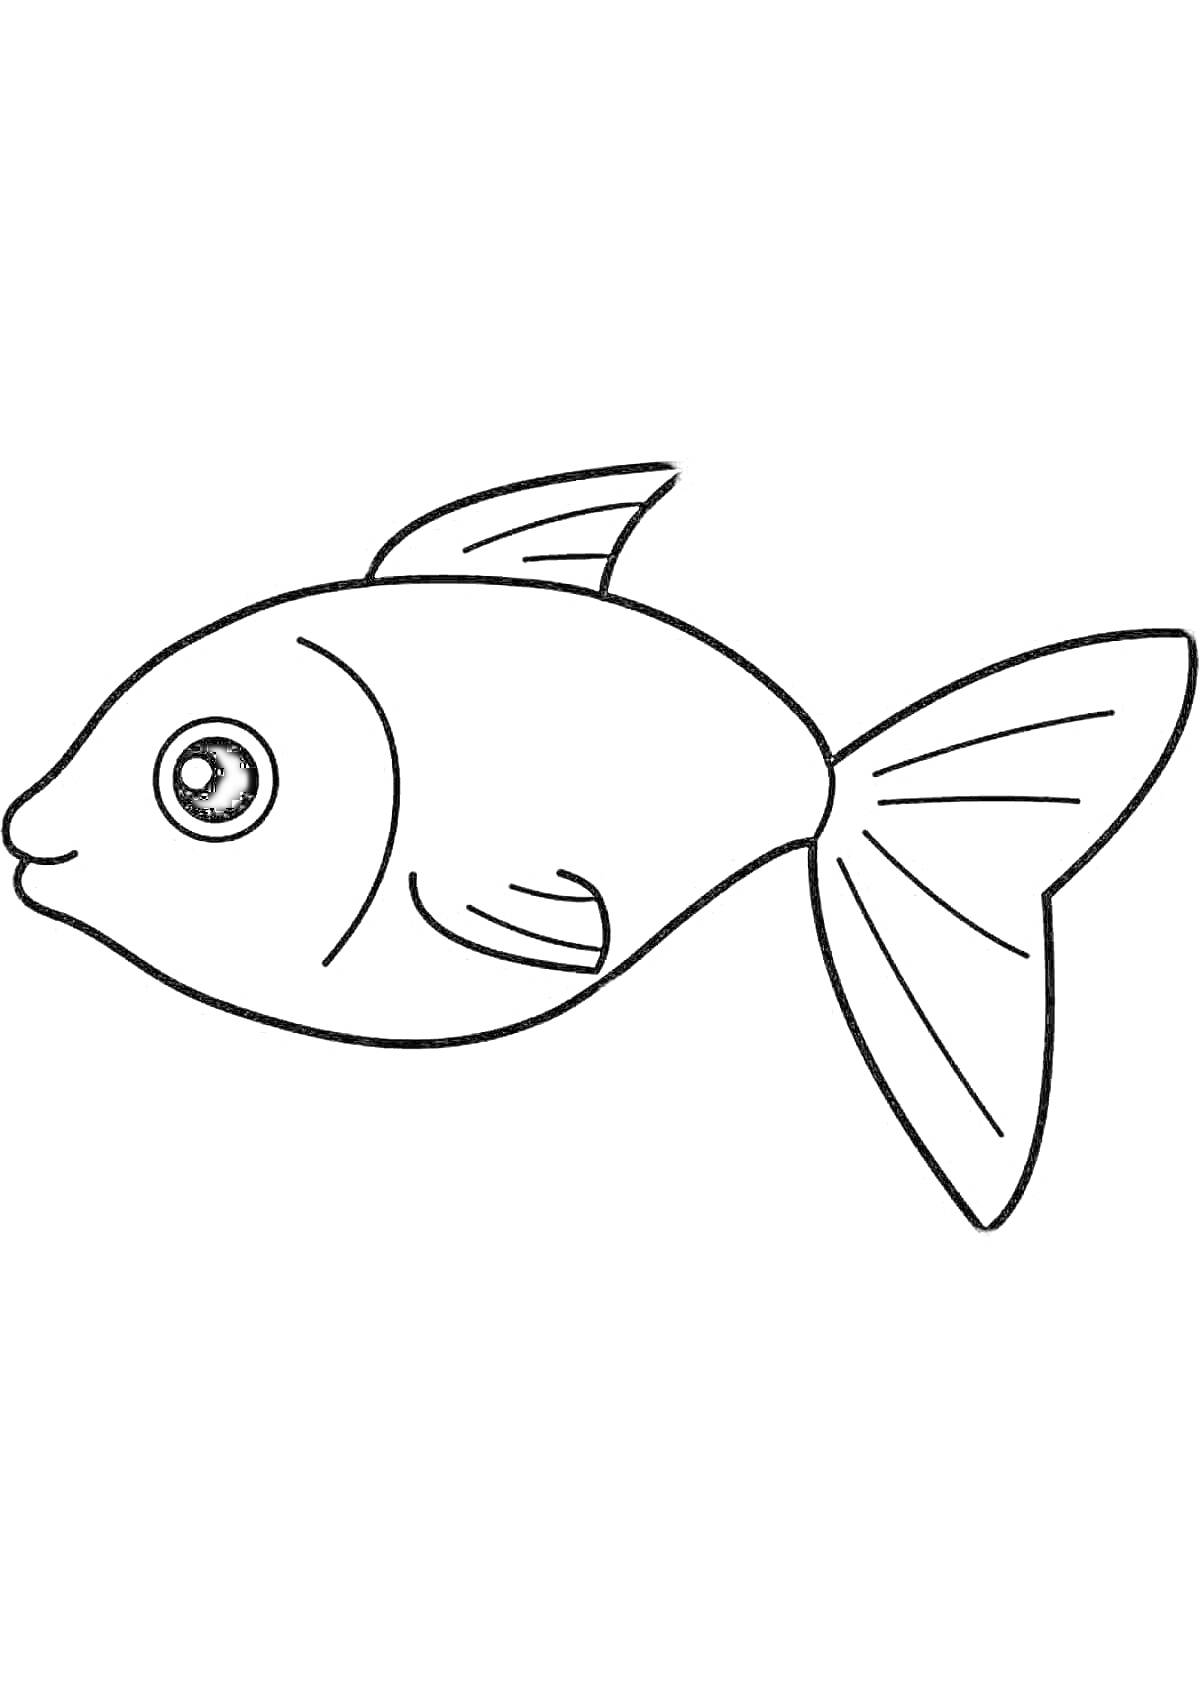 Раскраска простая рыбка с большим плавником и круглыми глазами